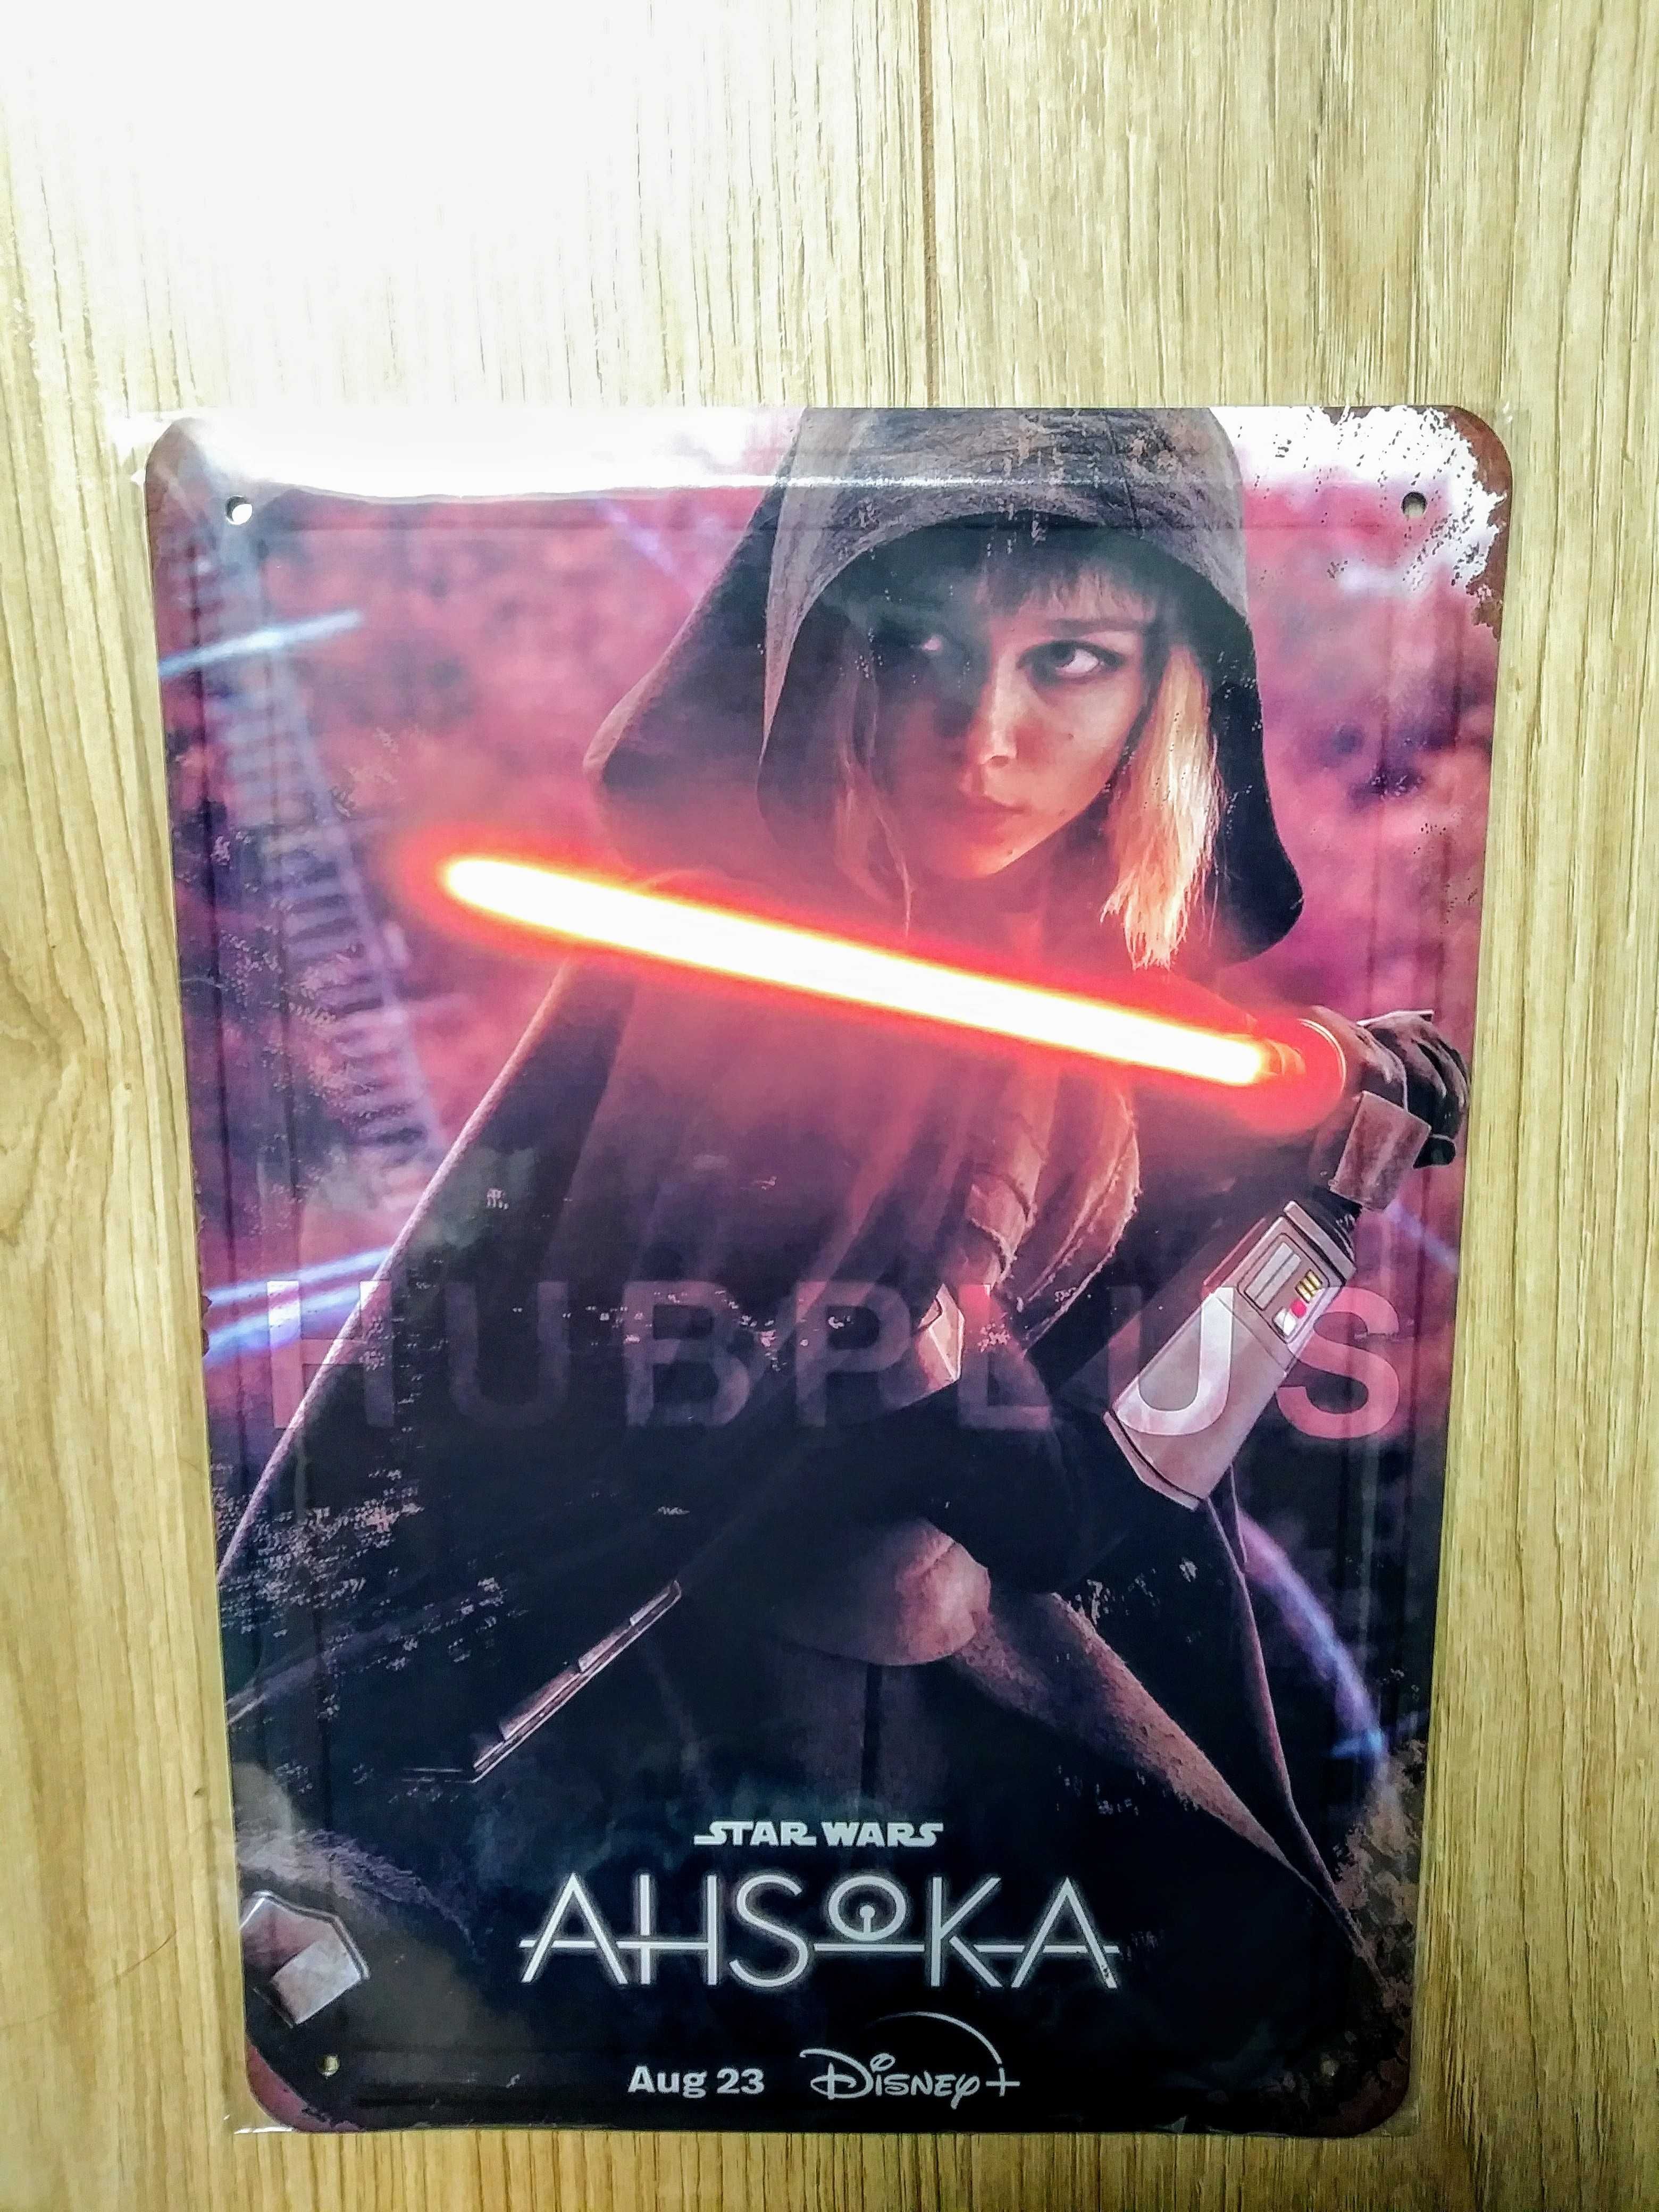 Ashoka "Star Wars" - szyld/plakat metalowy 20x30.